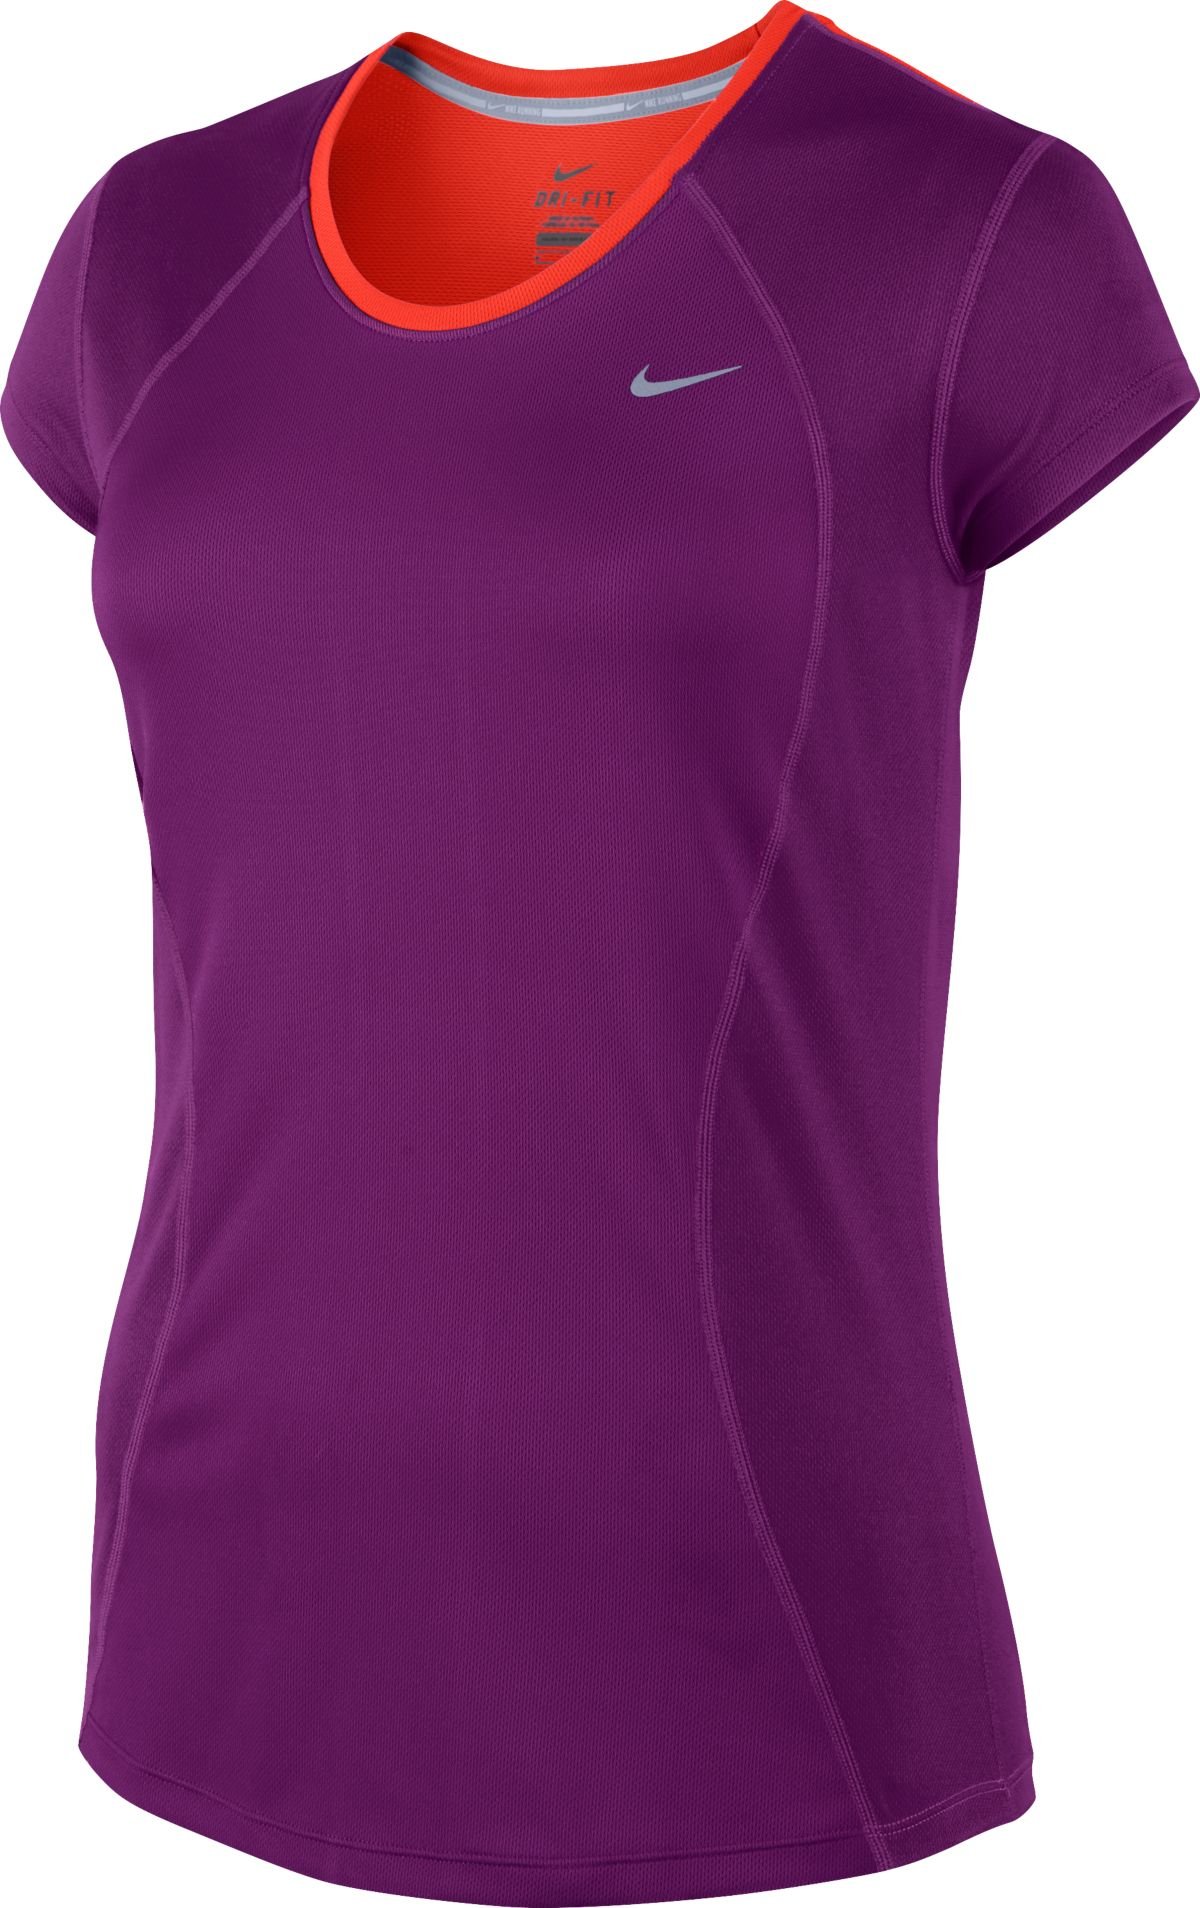 Dámské běžecké tričko s krátkým rukávem Nike Racer